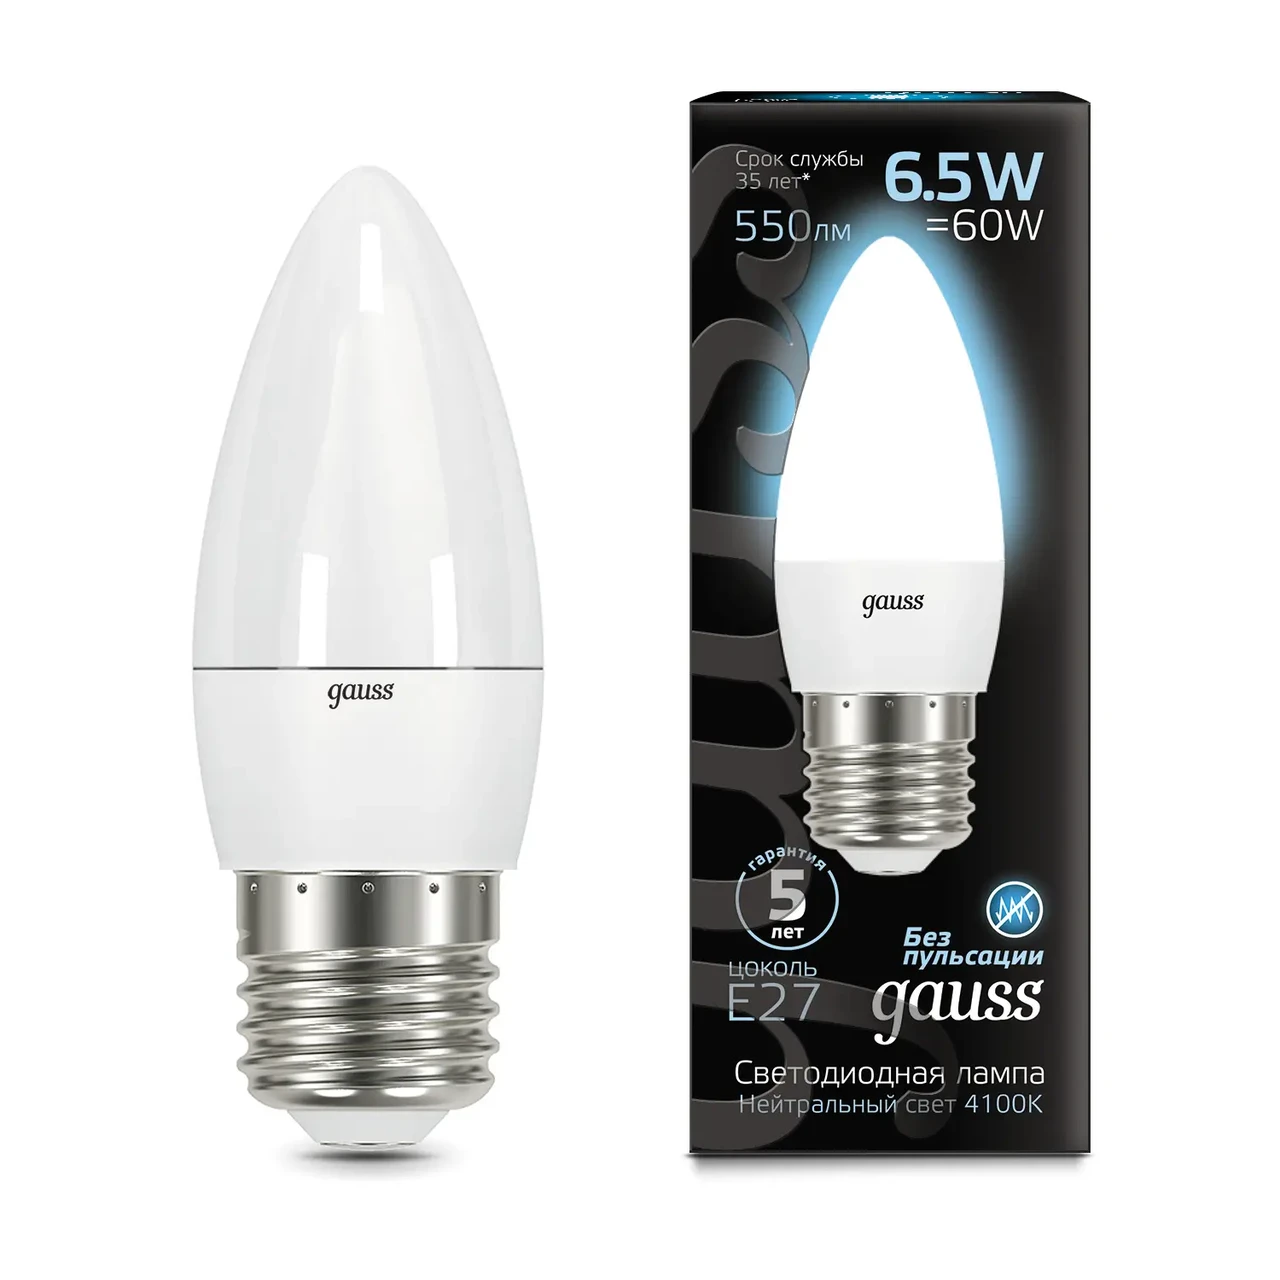 Лампа Gauss Свеча 6.5W 550lm 4100К E27 LED 1/10/100, фото 1